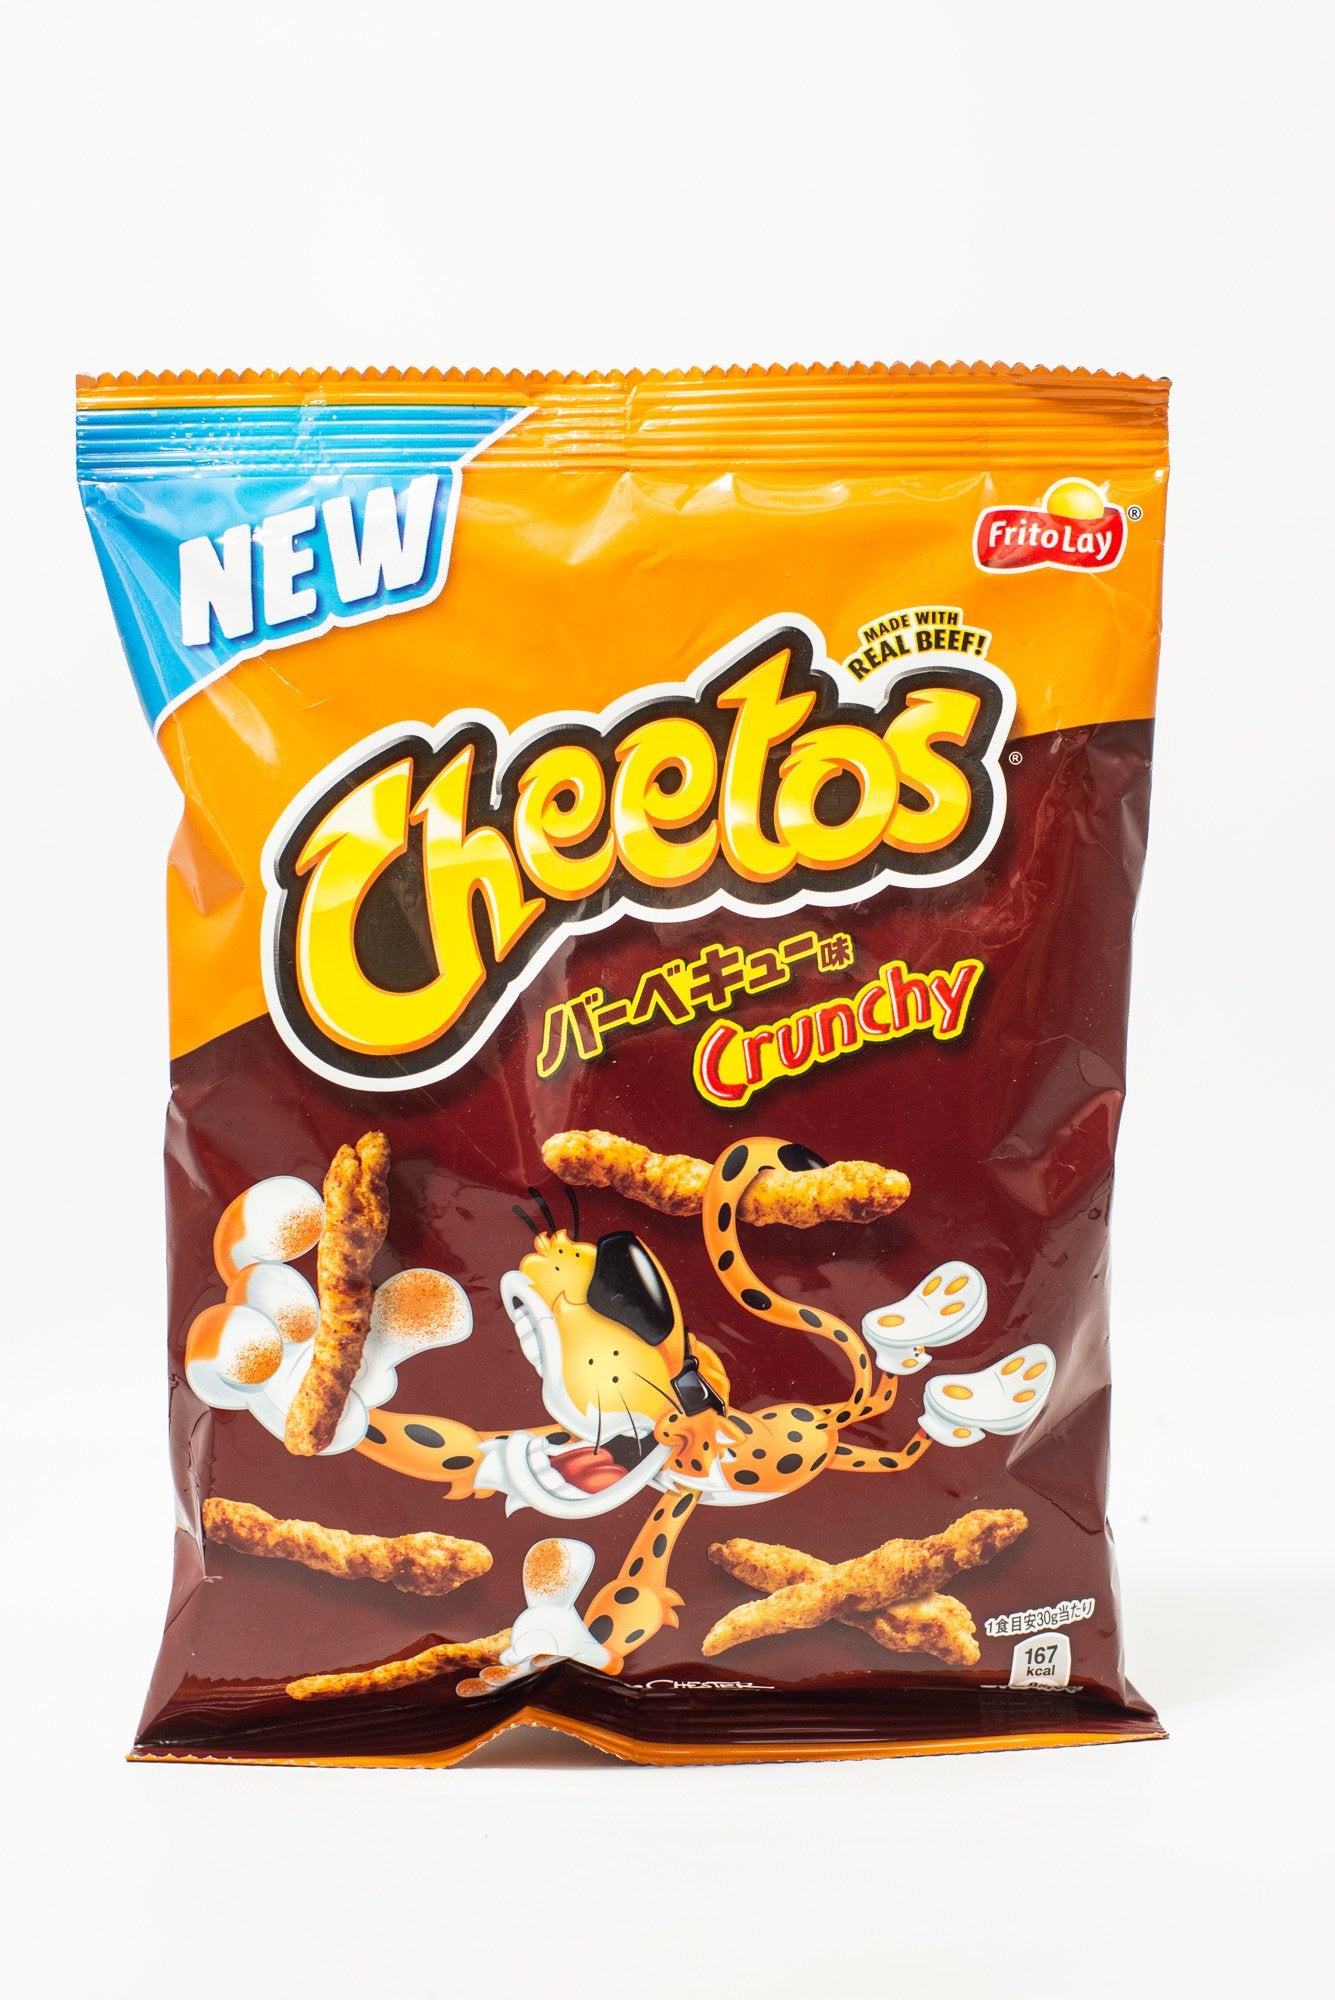 Cheetos JP - Crunchy Beef